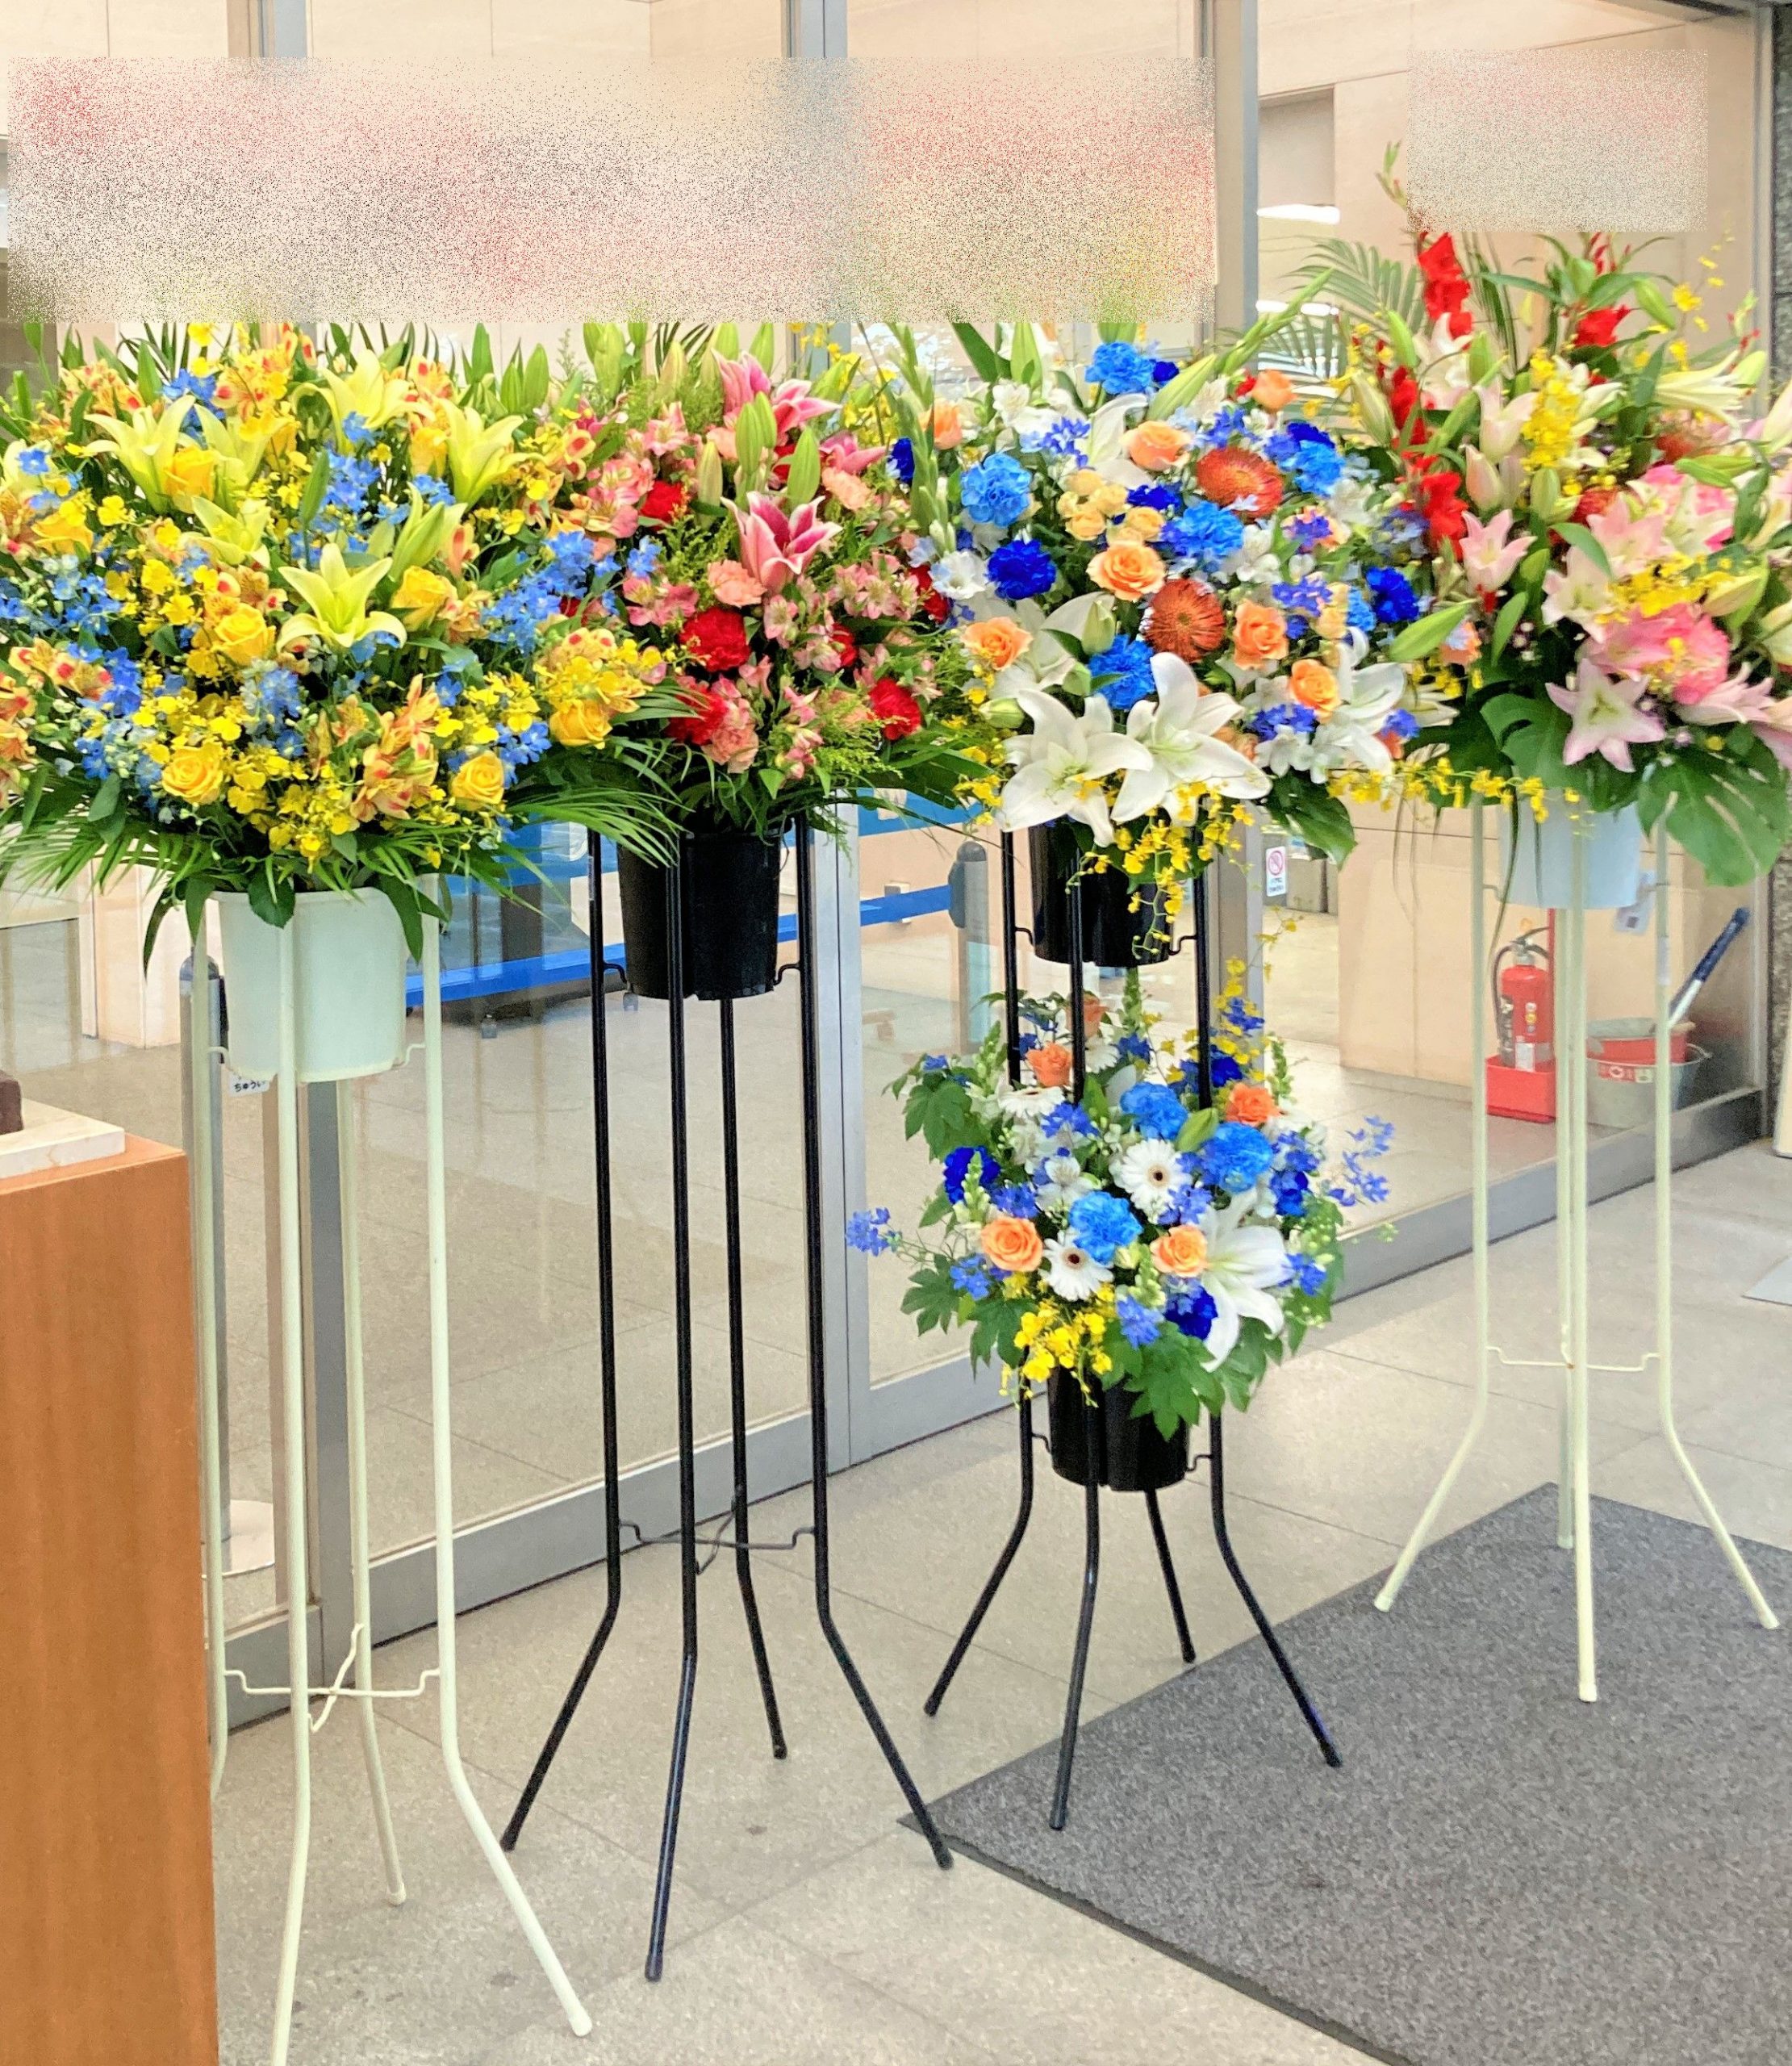 横浜市にある神奈川大学へスタンド花を即日当日配達しました。【横浜花屋の花束・スタンド花・胡蝶蘭・バルーン・アレンジメント配達事例973】